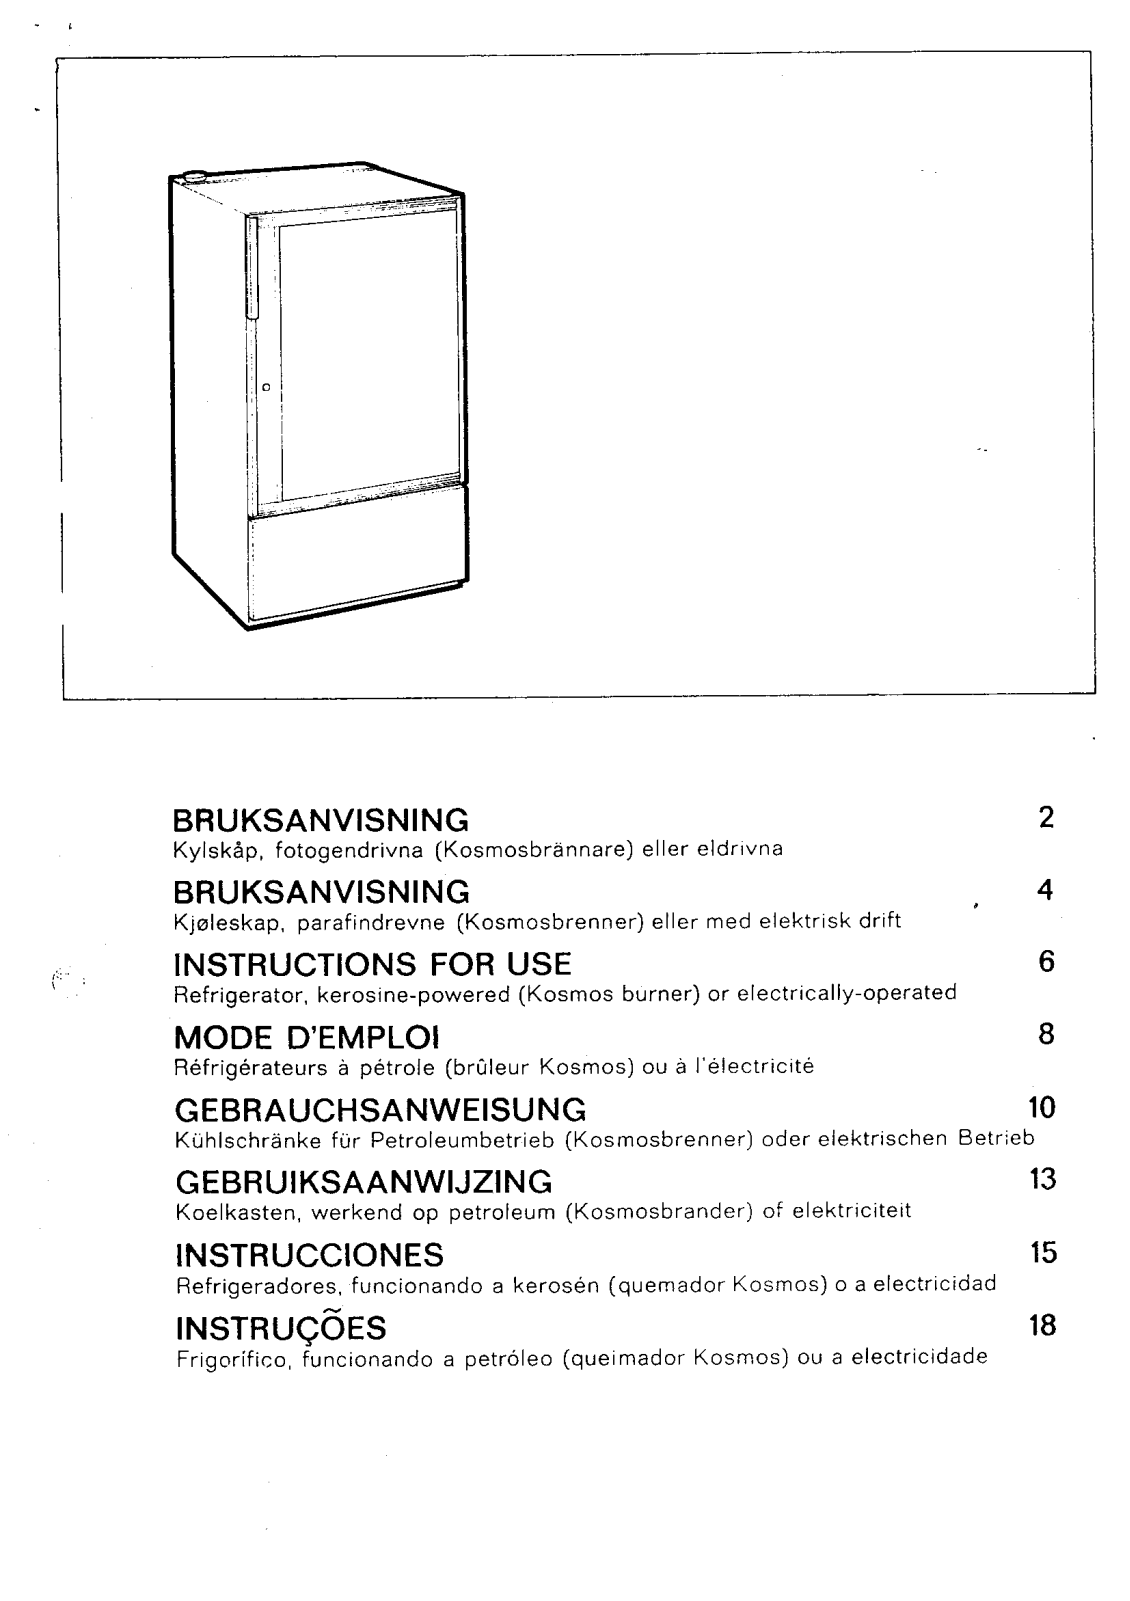 electrolux RAK662 User Manual